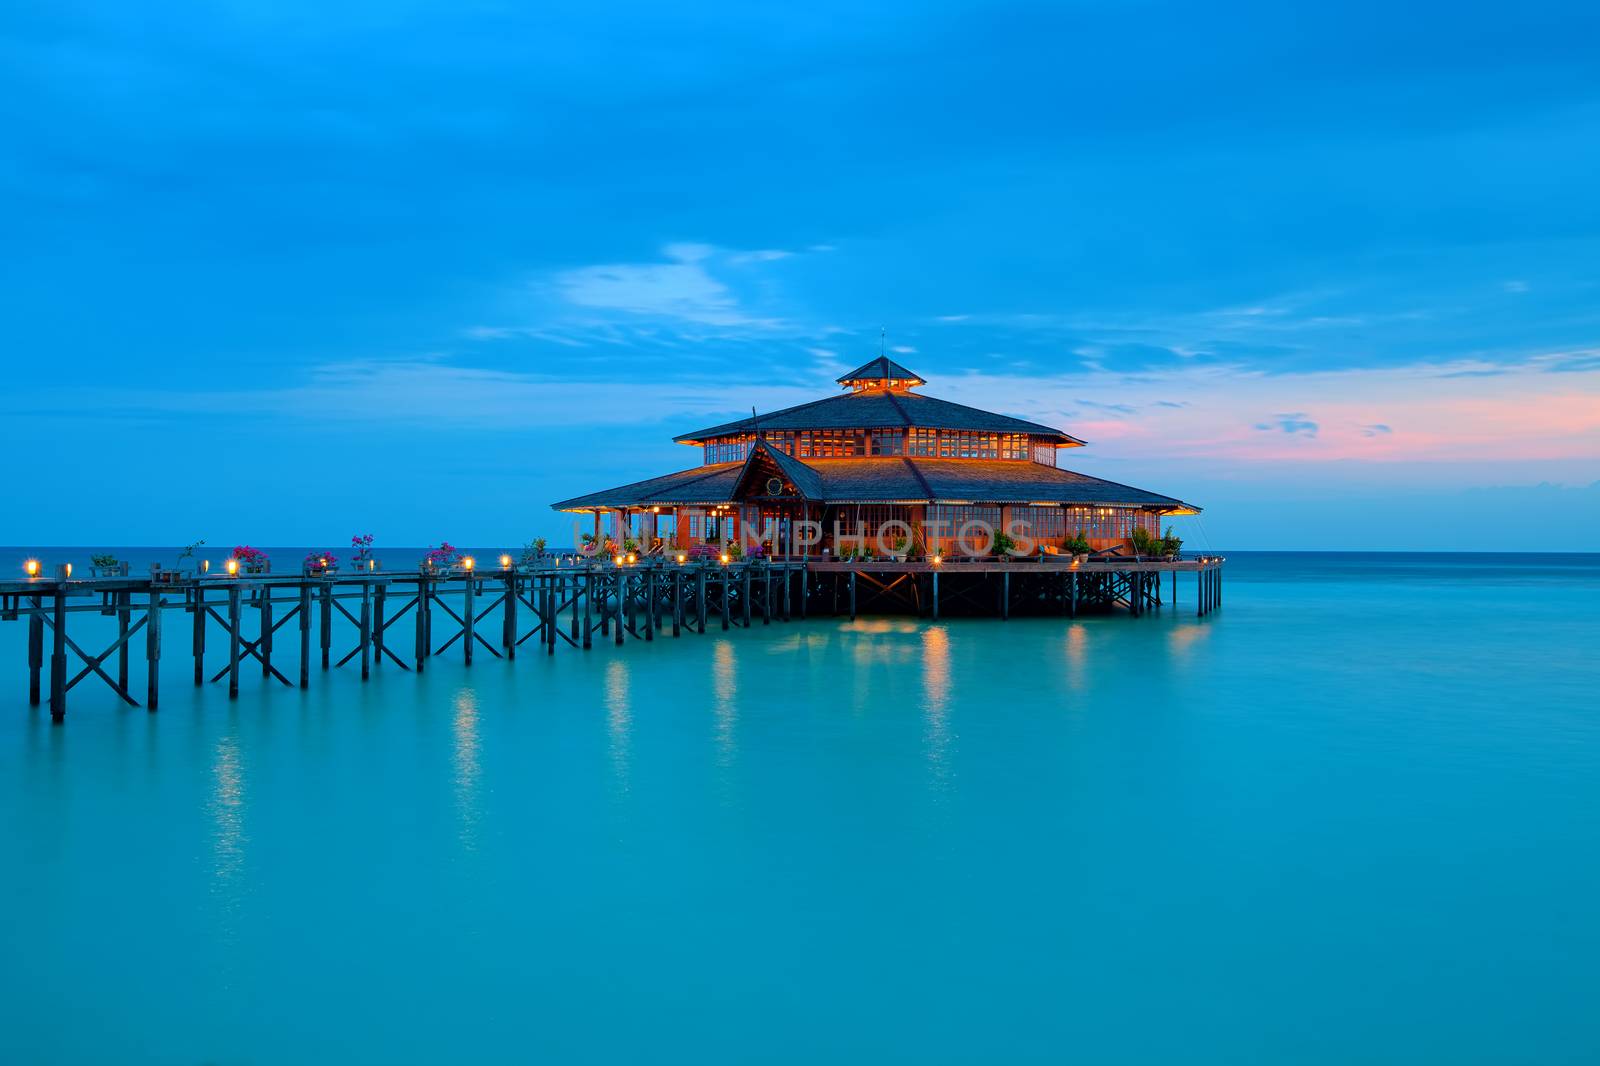 Lankayan island resort at sunset in Borneo, Malaysia